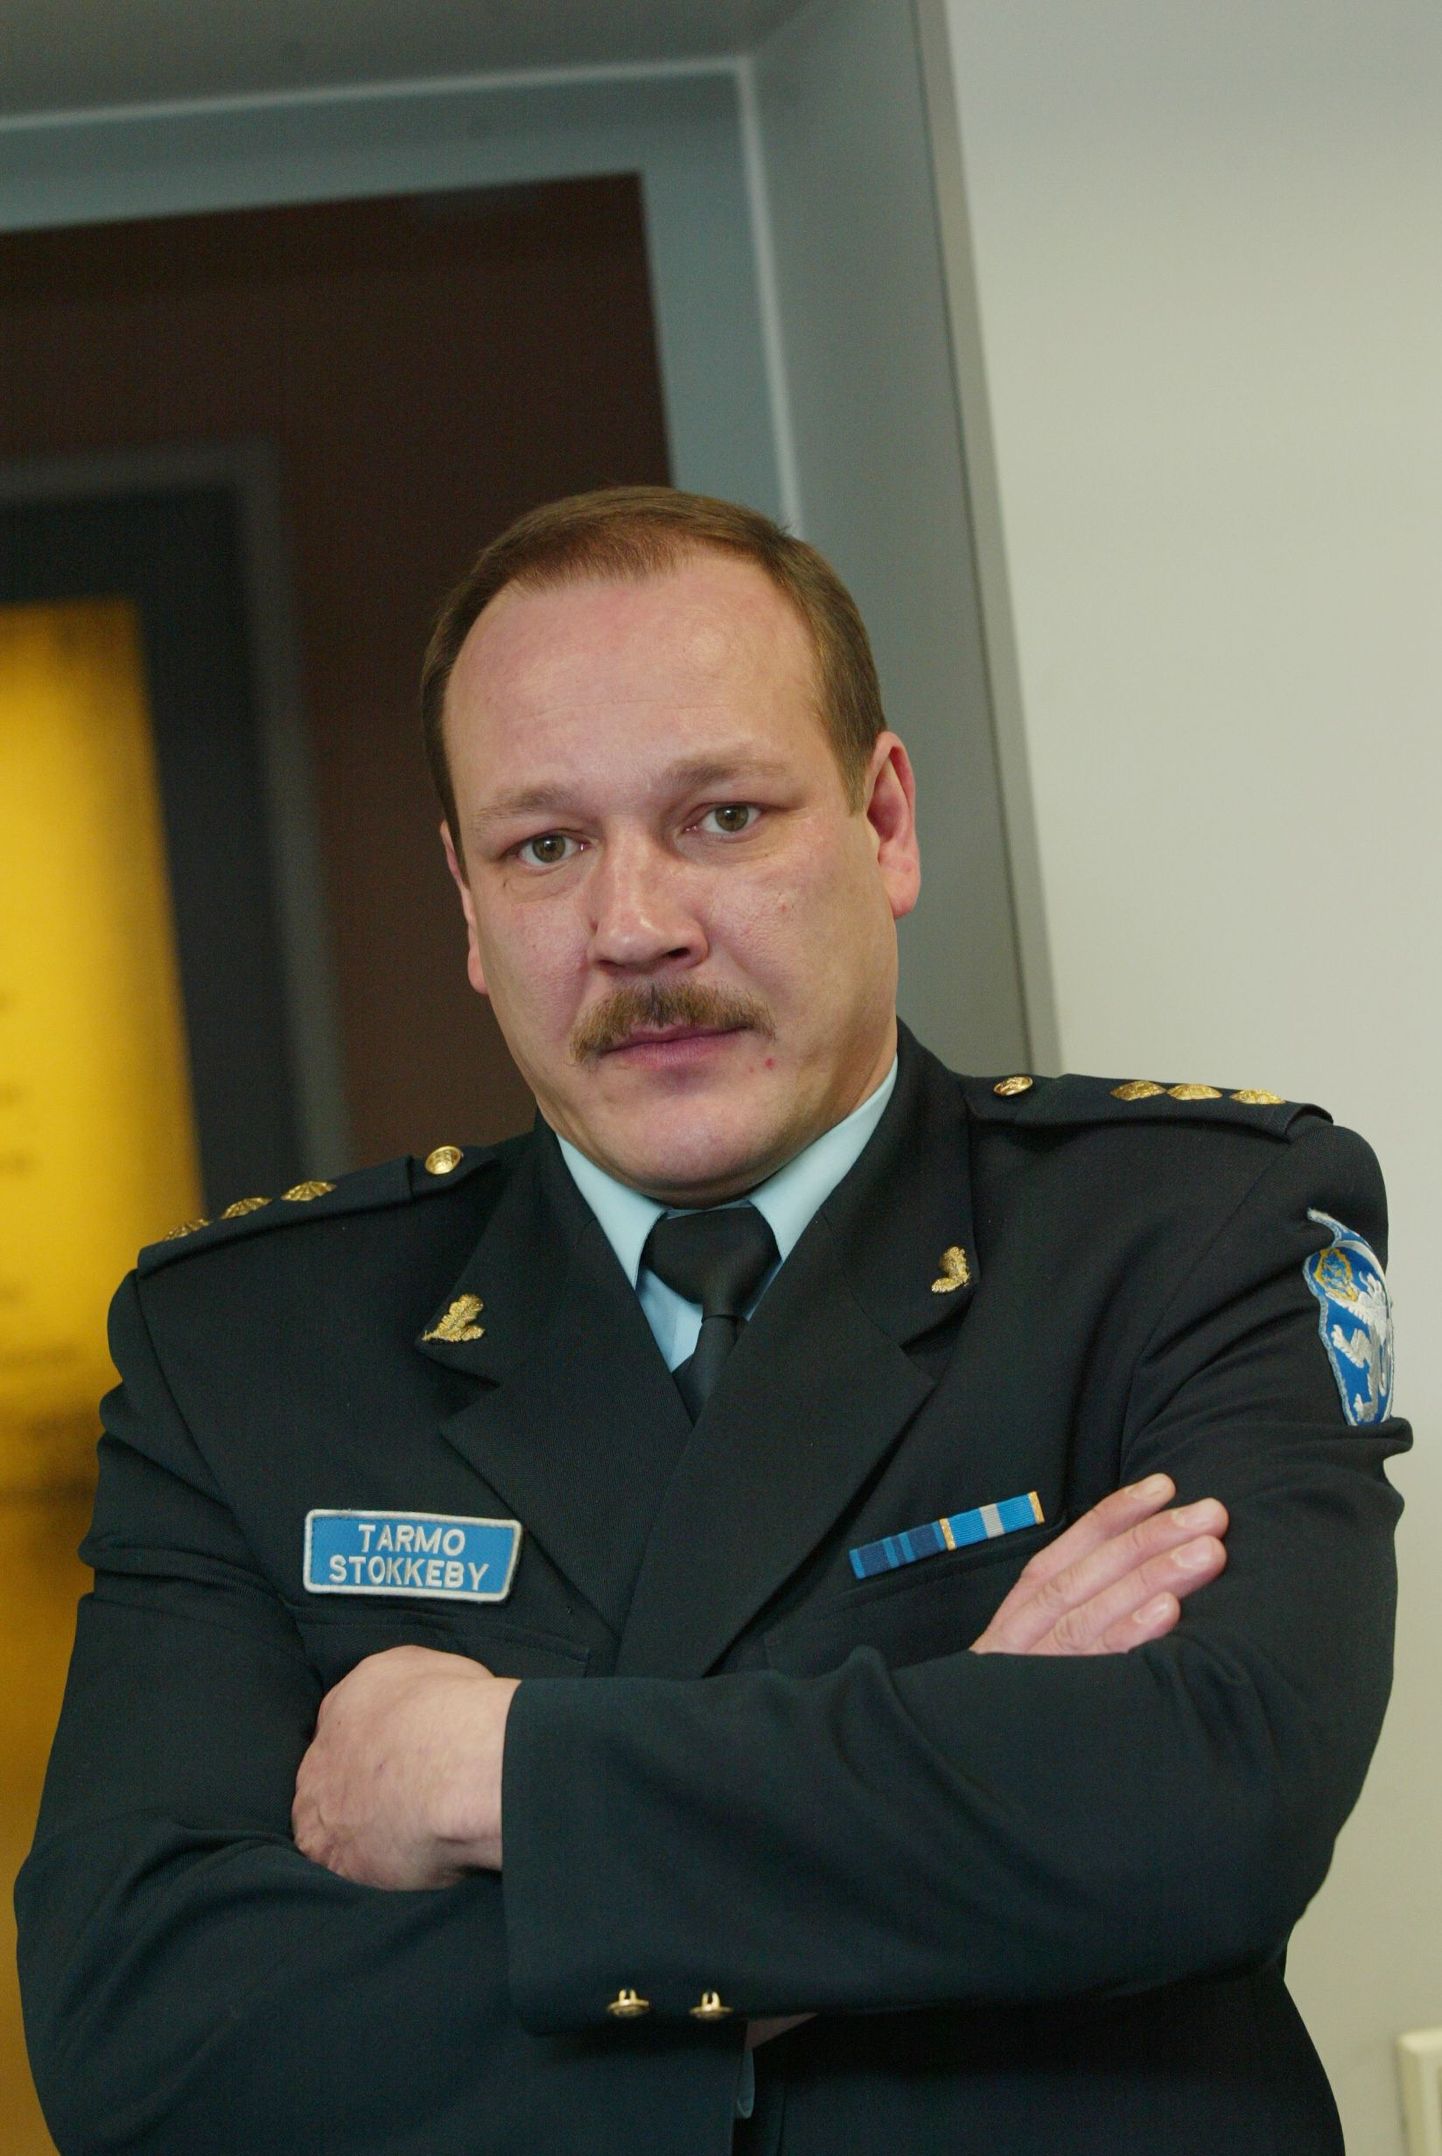 Tartu politseiosakonna vanemkomissar Tarmo Stokkeby asus tänasest tööle Põlva politseijaoskonna ülemana.